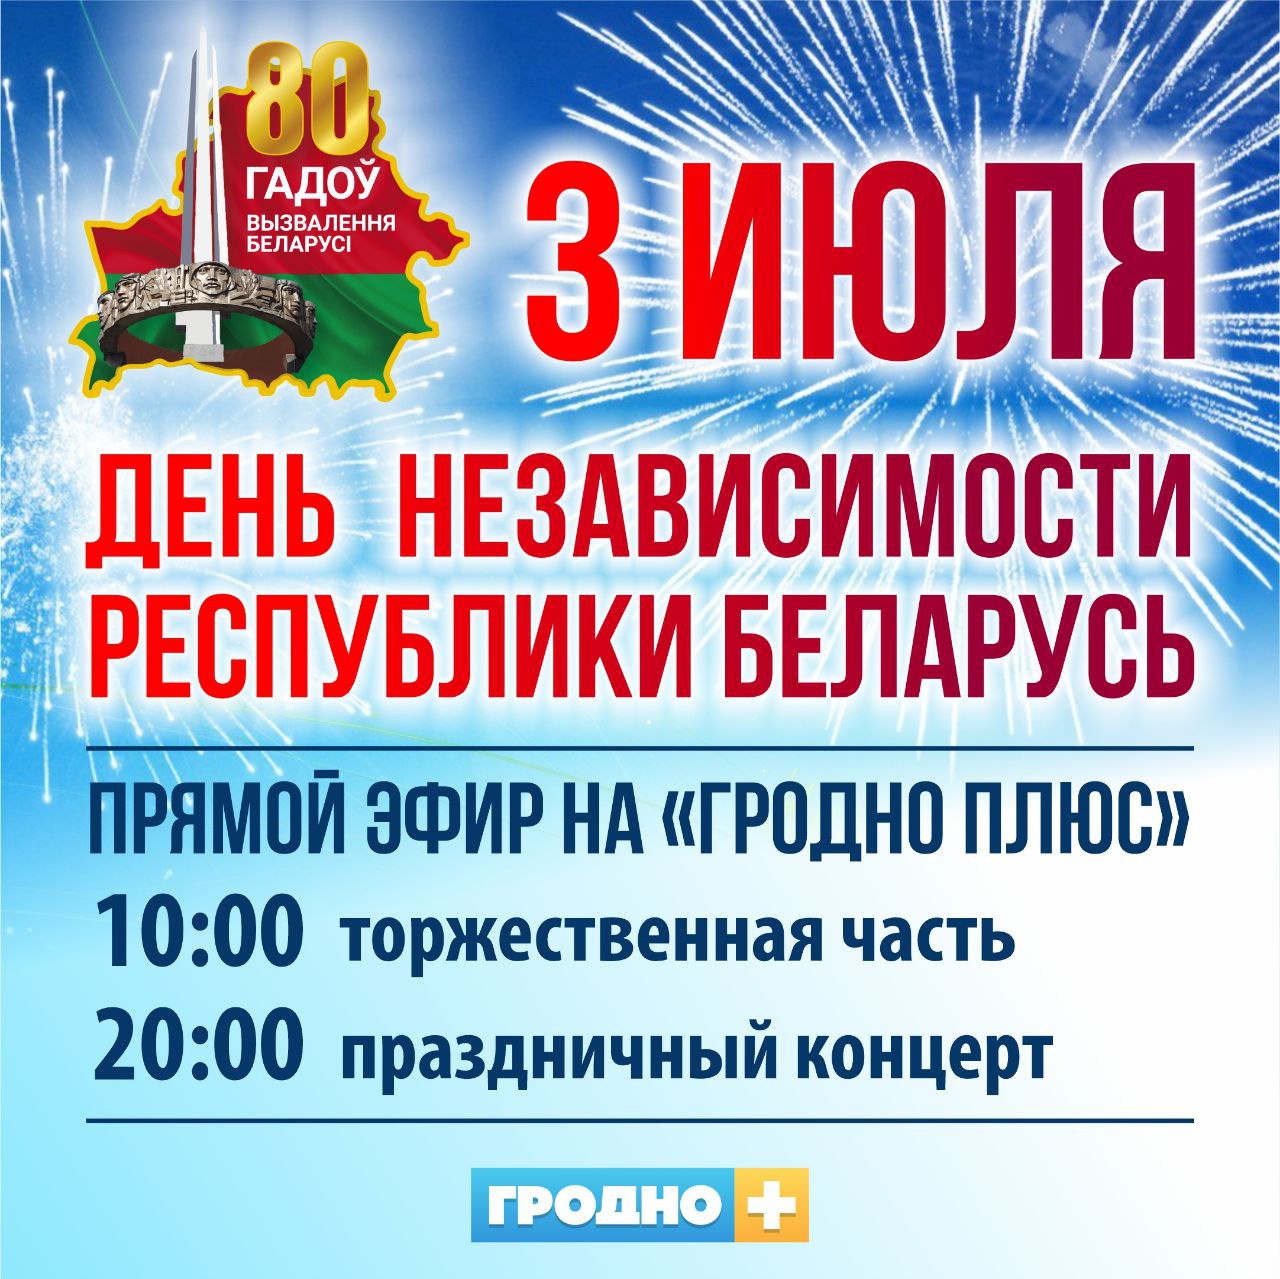 Если не сможете выбраться в город: День независимости в Гродно покажут в прямом эфире